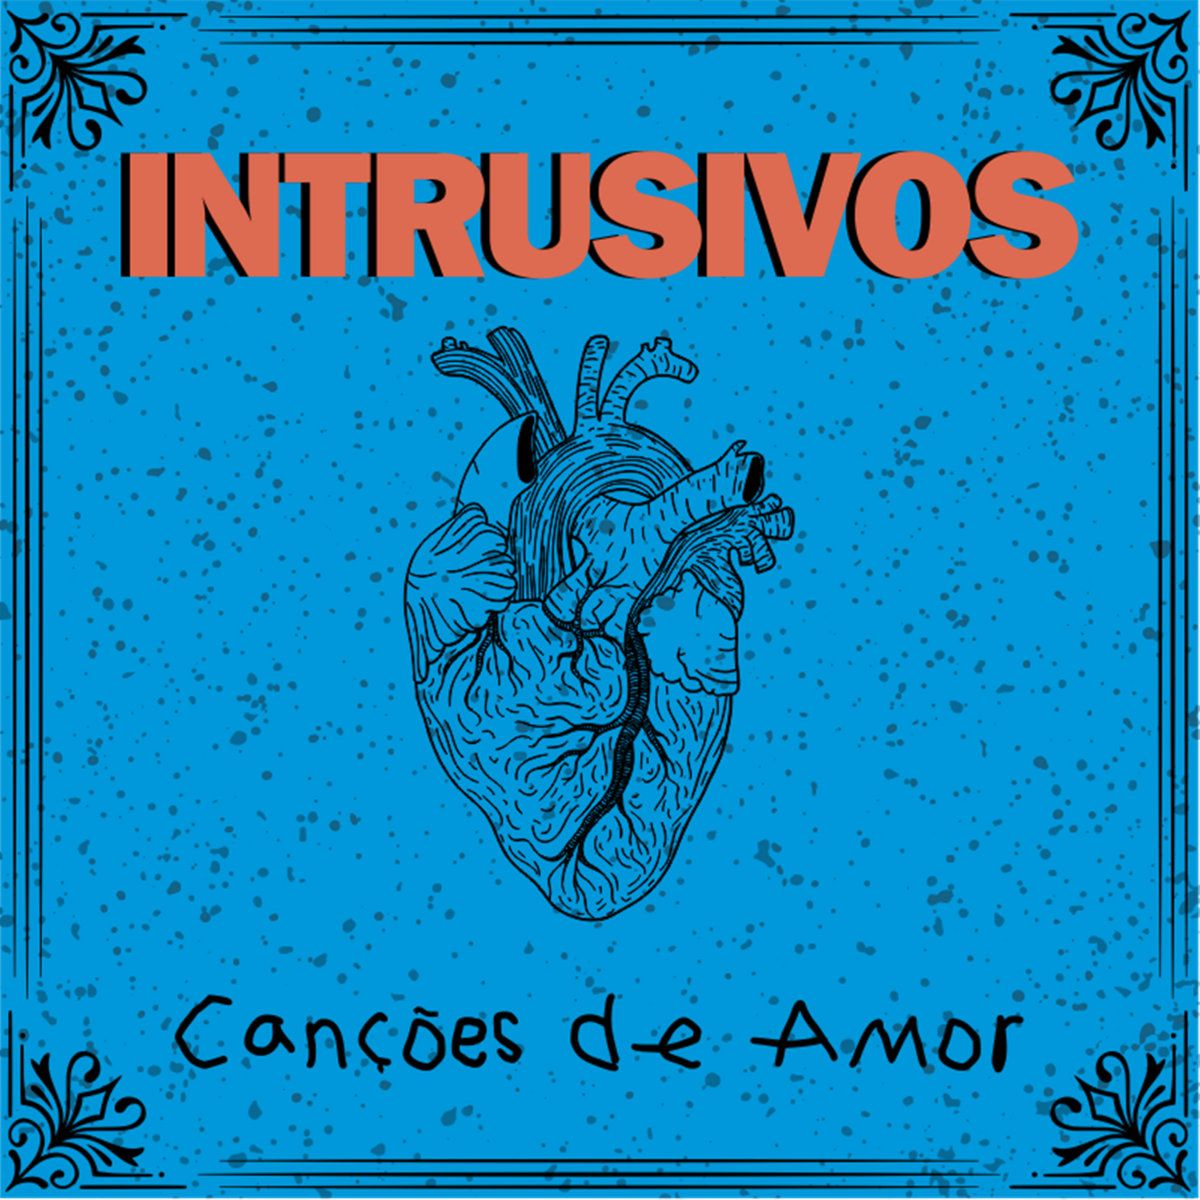 Imagem do álbum Canções de Amor do(a) artista Os Intrusivos